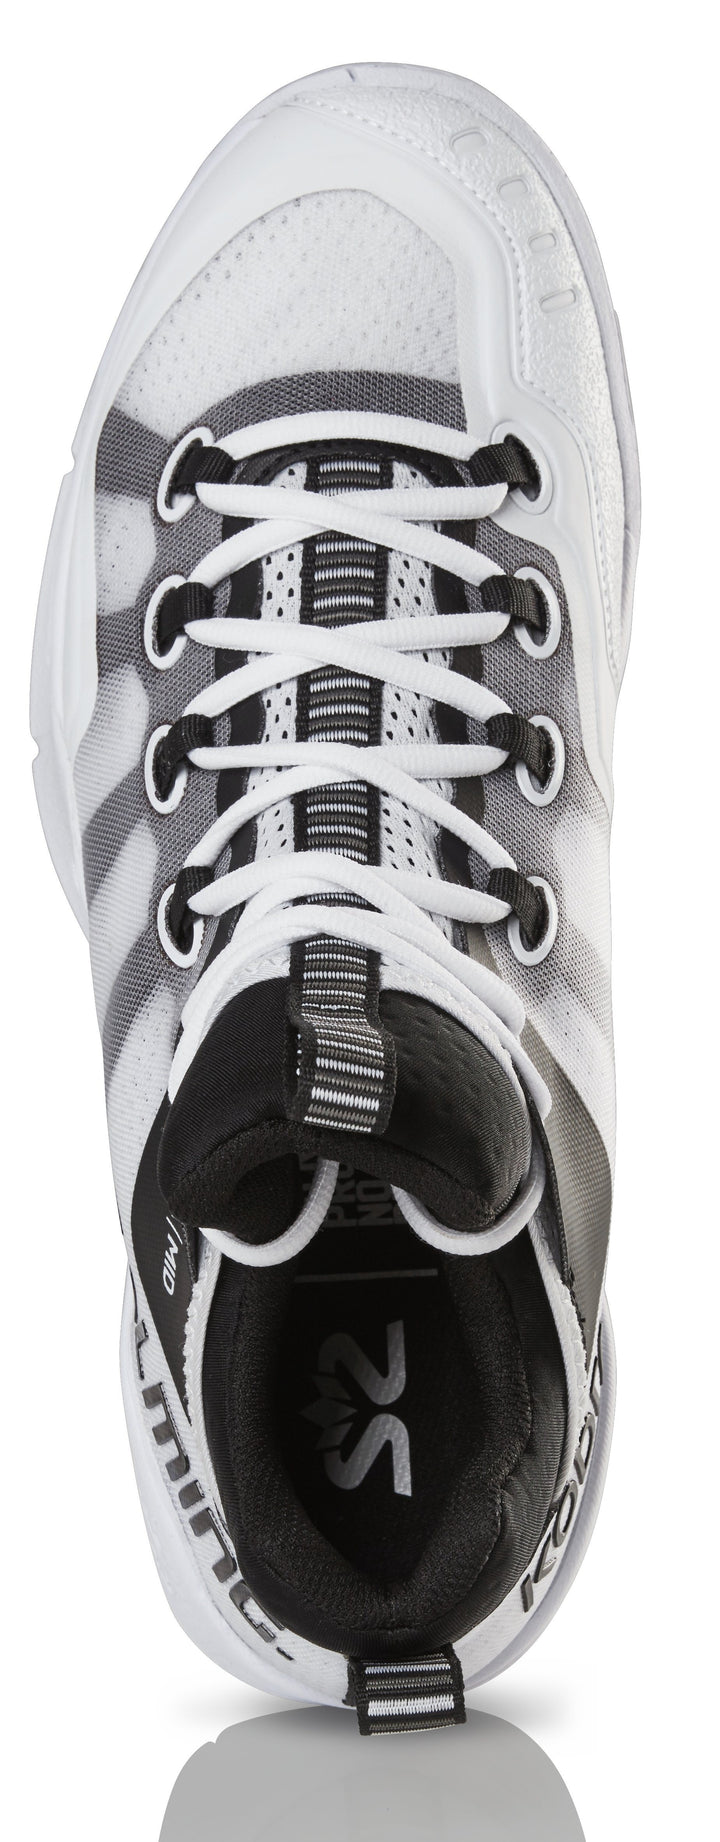 Salming Kobra Mid 2 Men's Court Shoe White/Black Men's Court Shoes Salming 